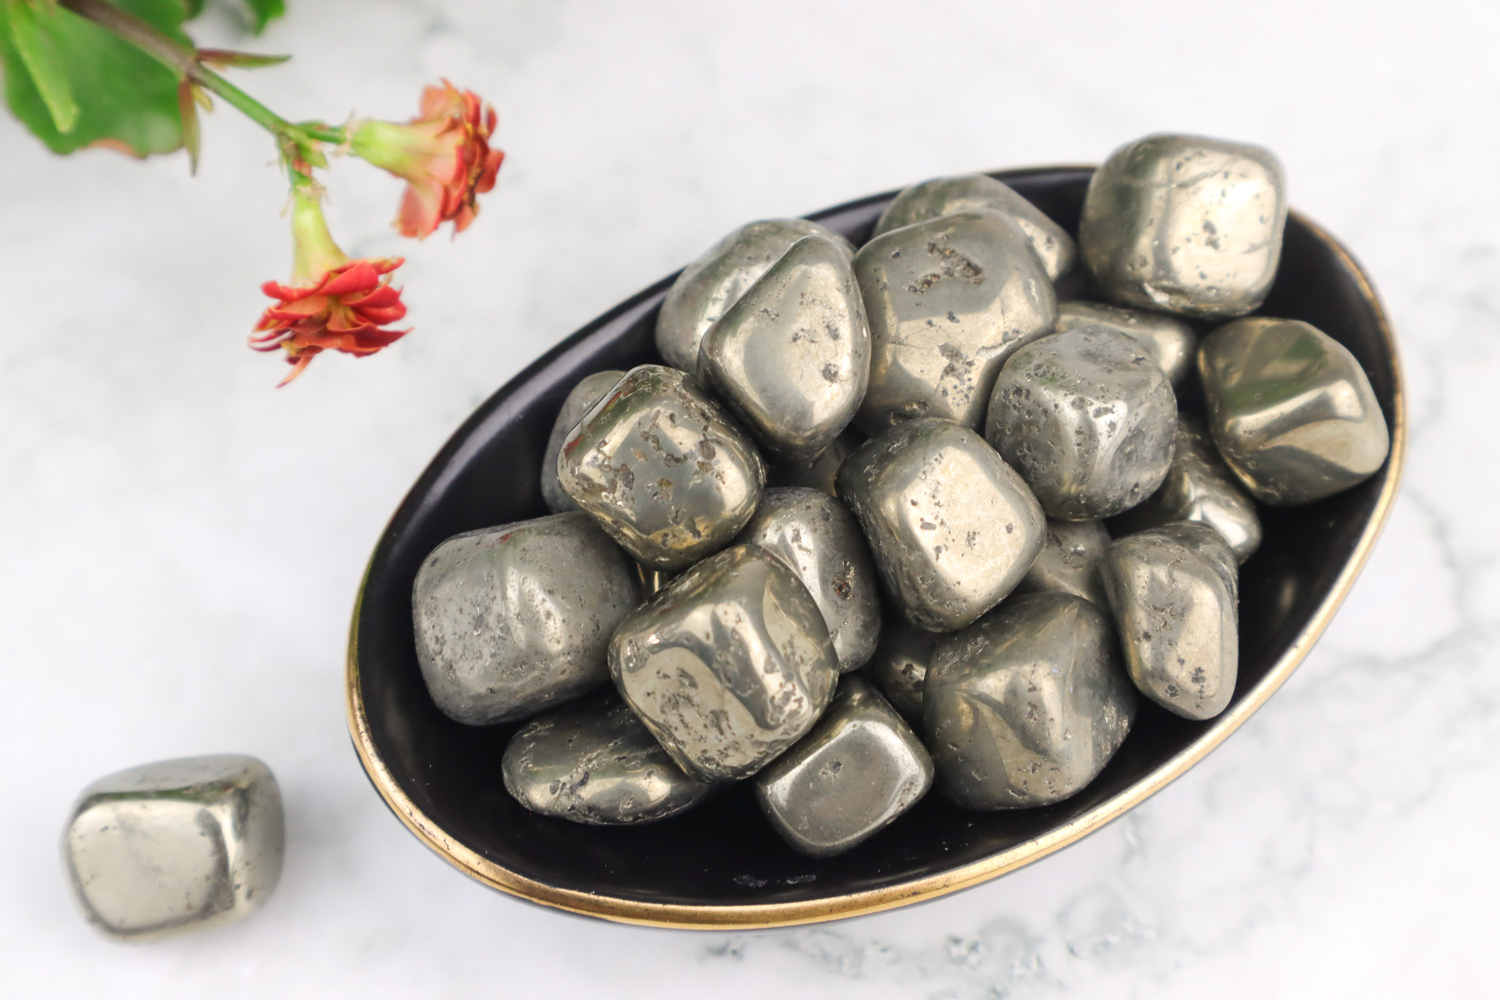 Pyrite Tumblestones